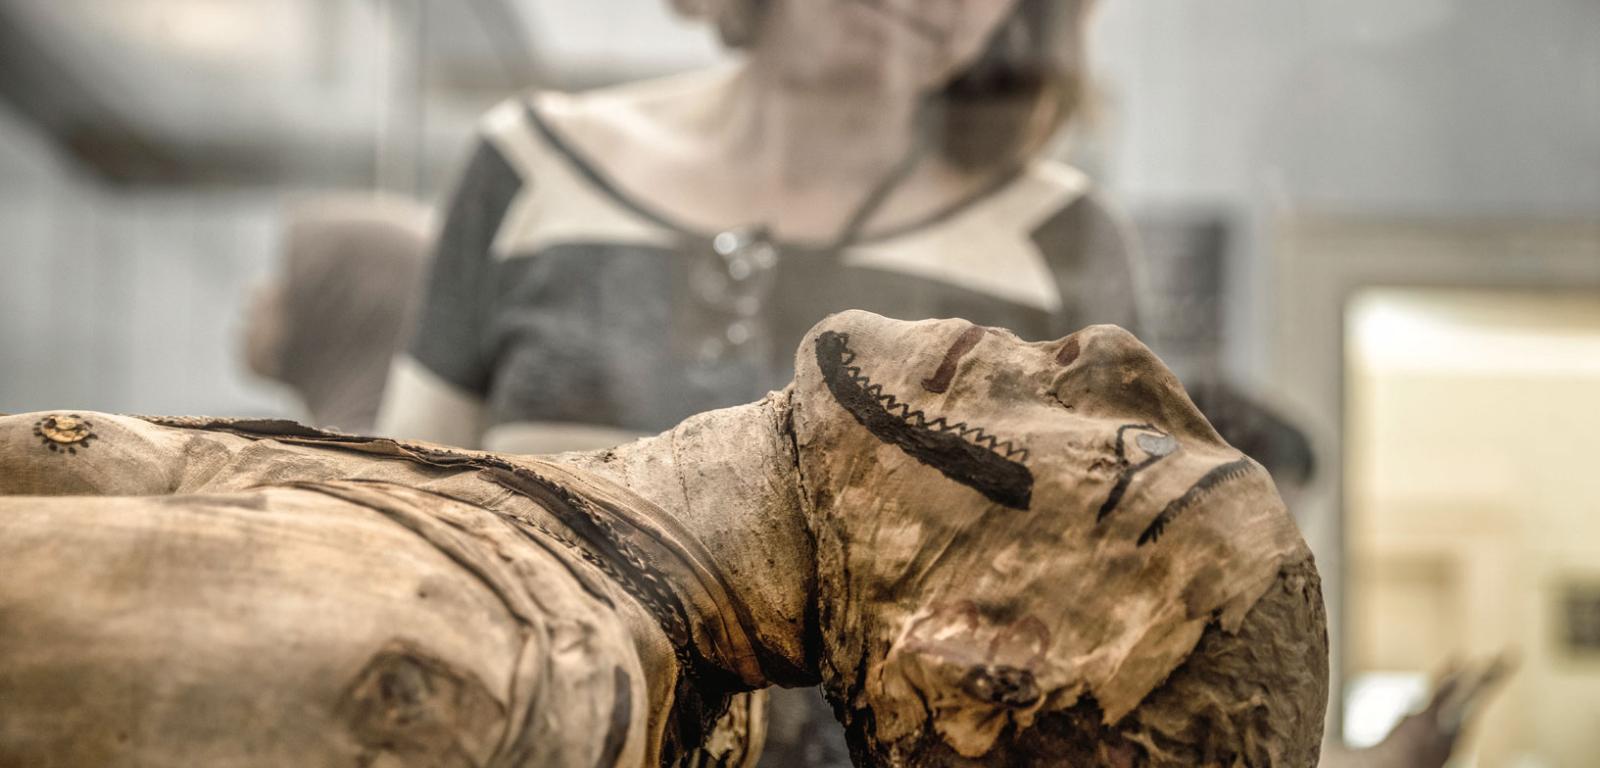 Mumia z kartonażem (cartonnage, czyli wykonana z warstw płótna i gipsu maska) z British Museum.